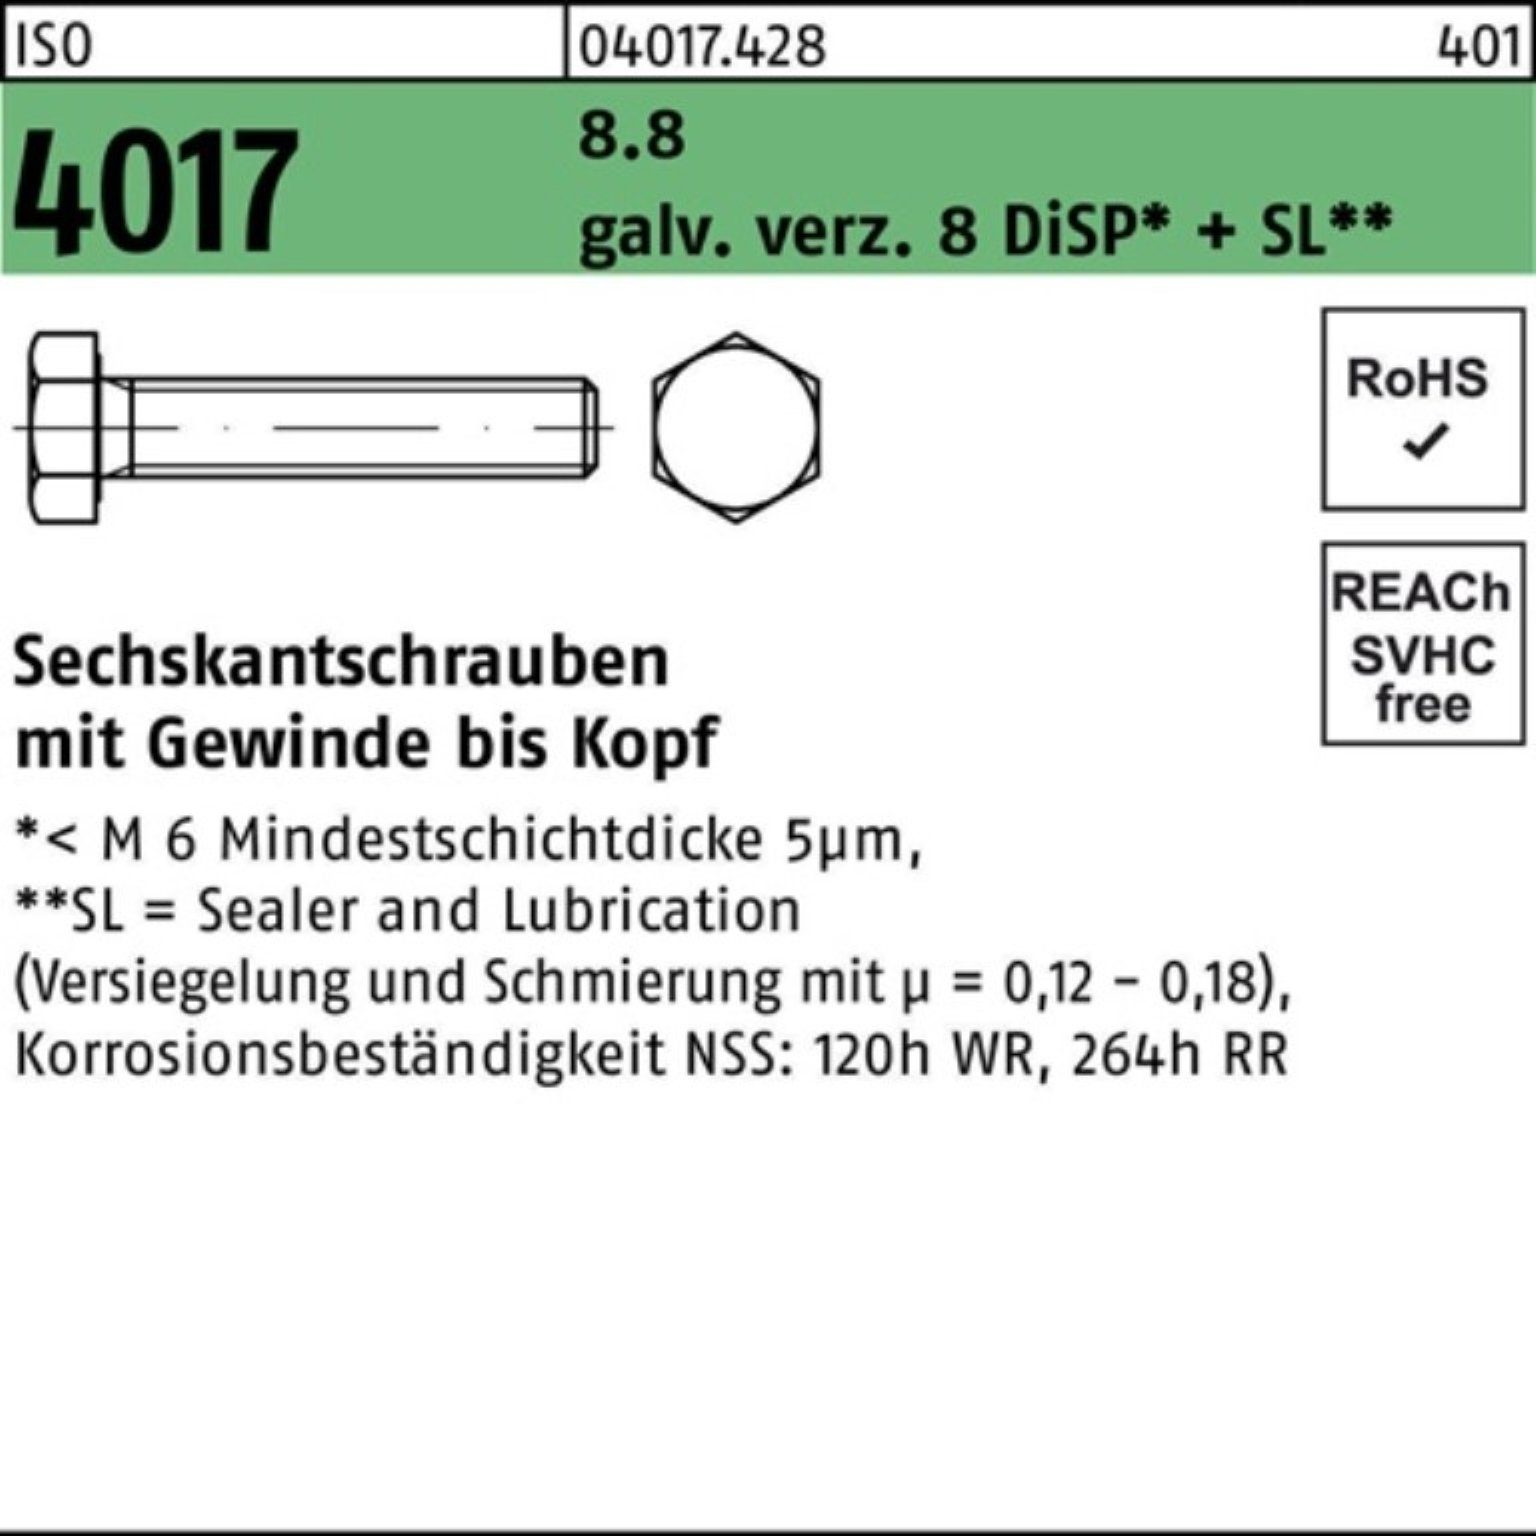 8 500er Sechskantschraube DiSP+S M3x Sechskantschraube 8 8.8 Pack galv.verz. 4017 Bufab VG ISO